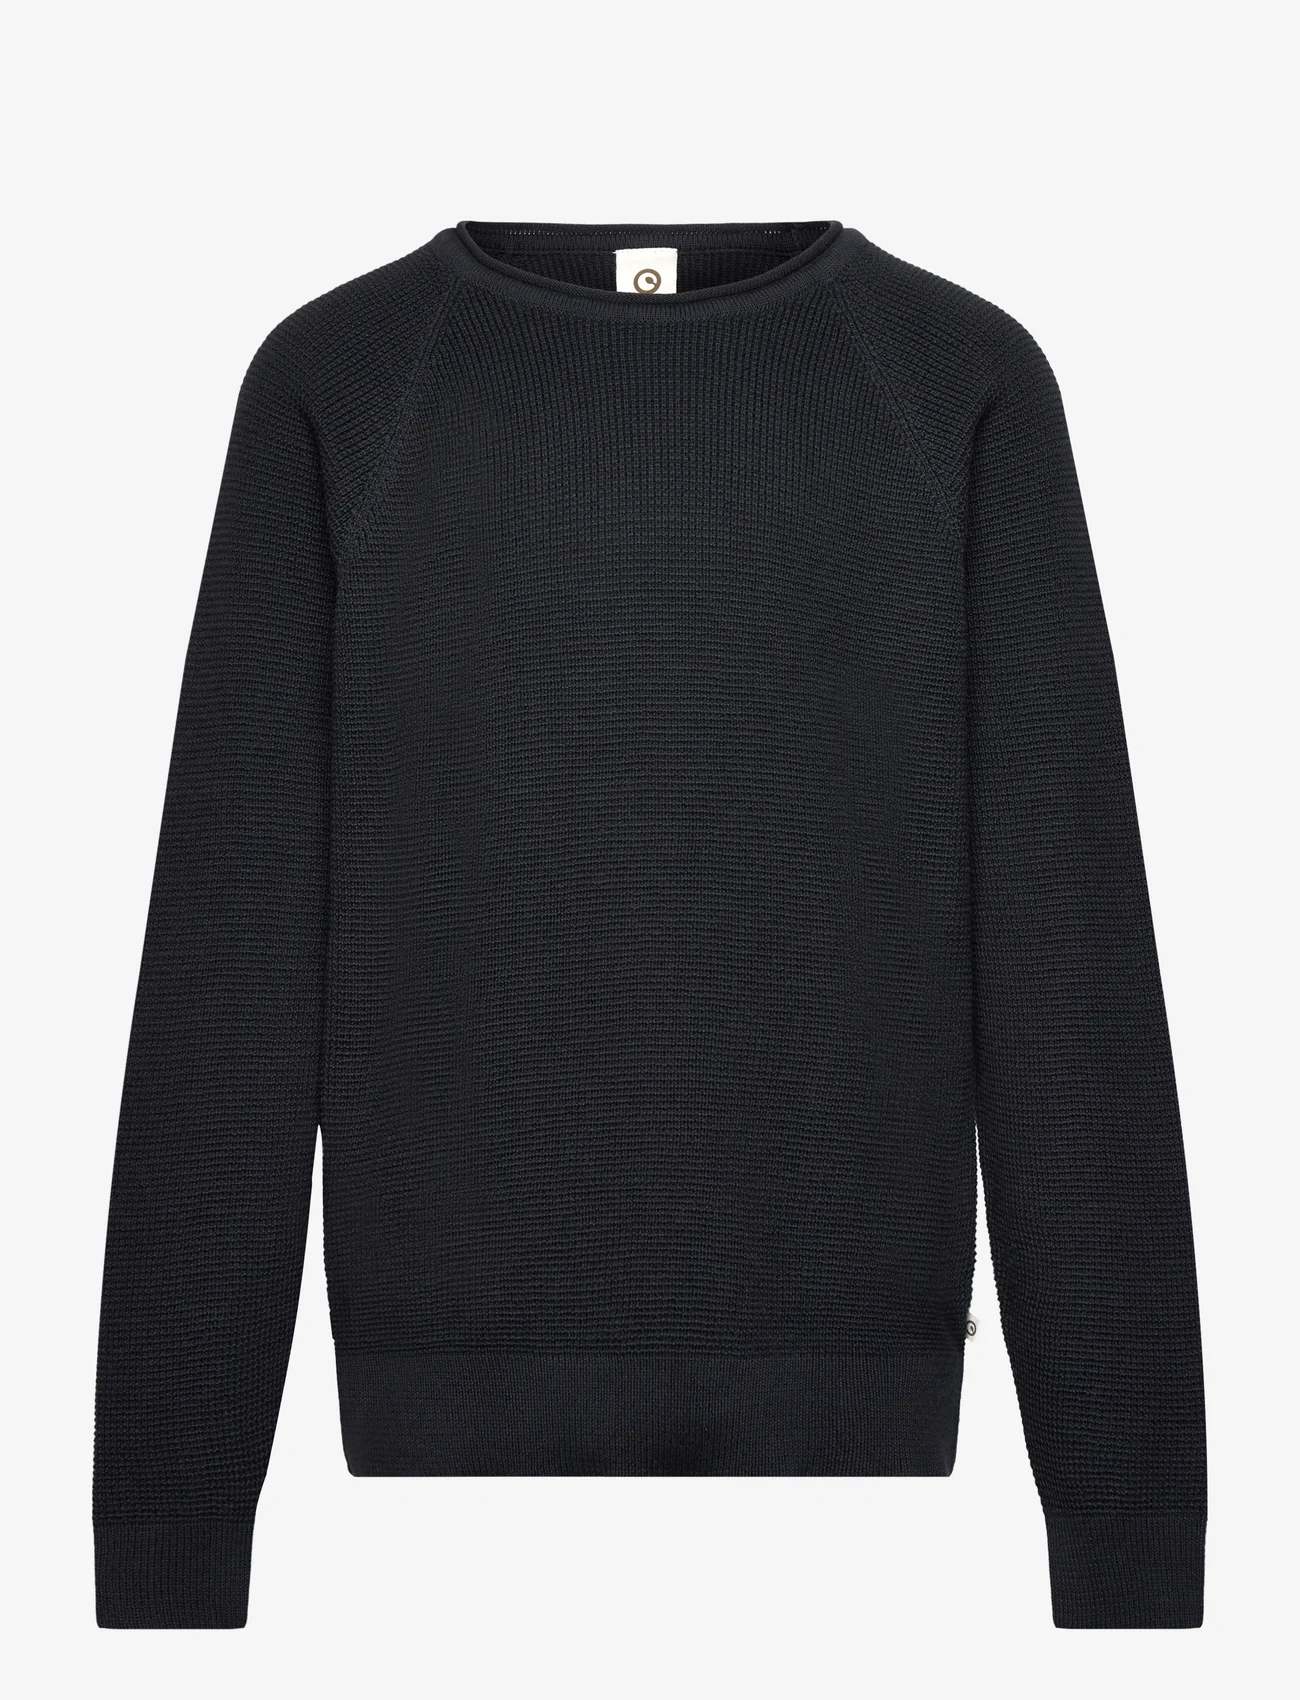 Müsli by Green Cotton - Knit raglan sweater - trøjer - night blue - 0